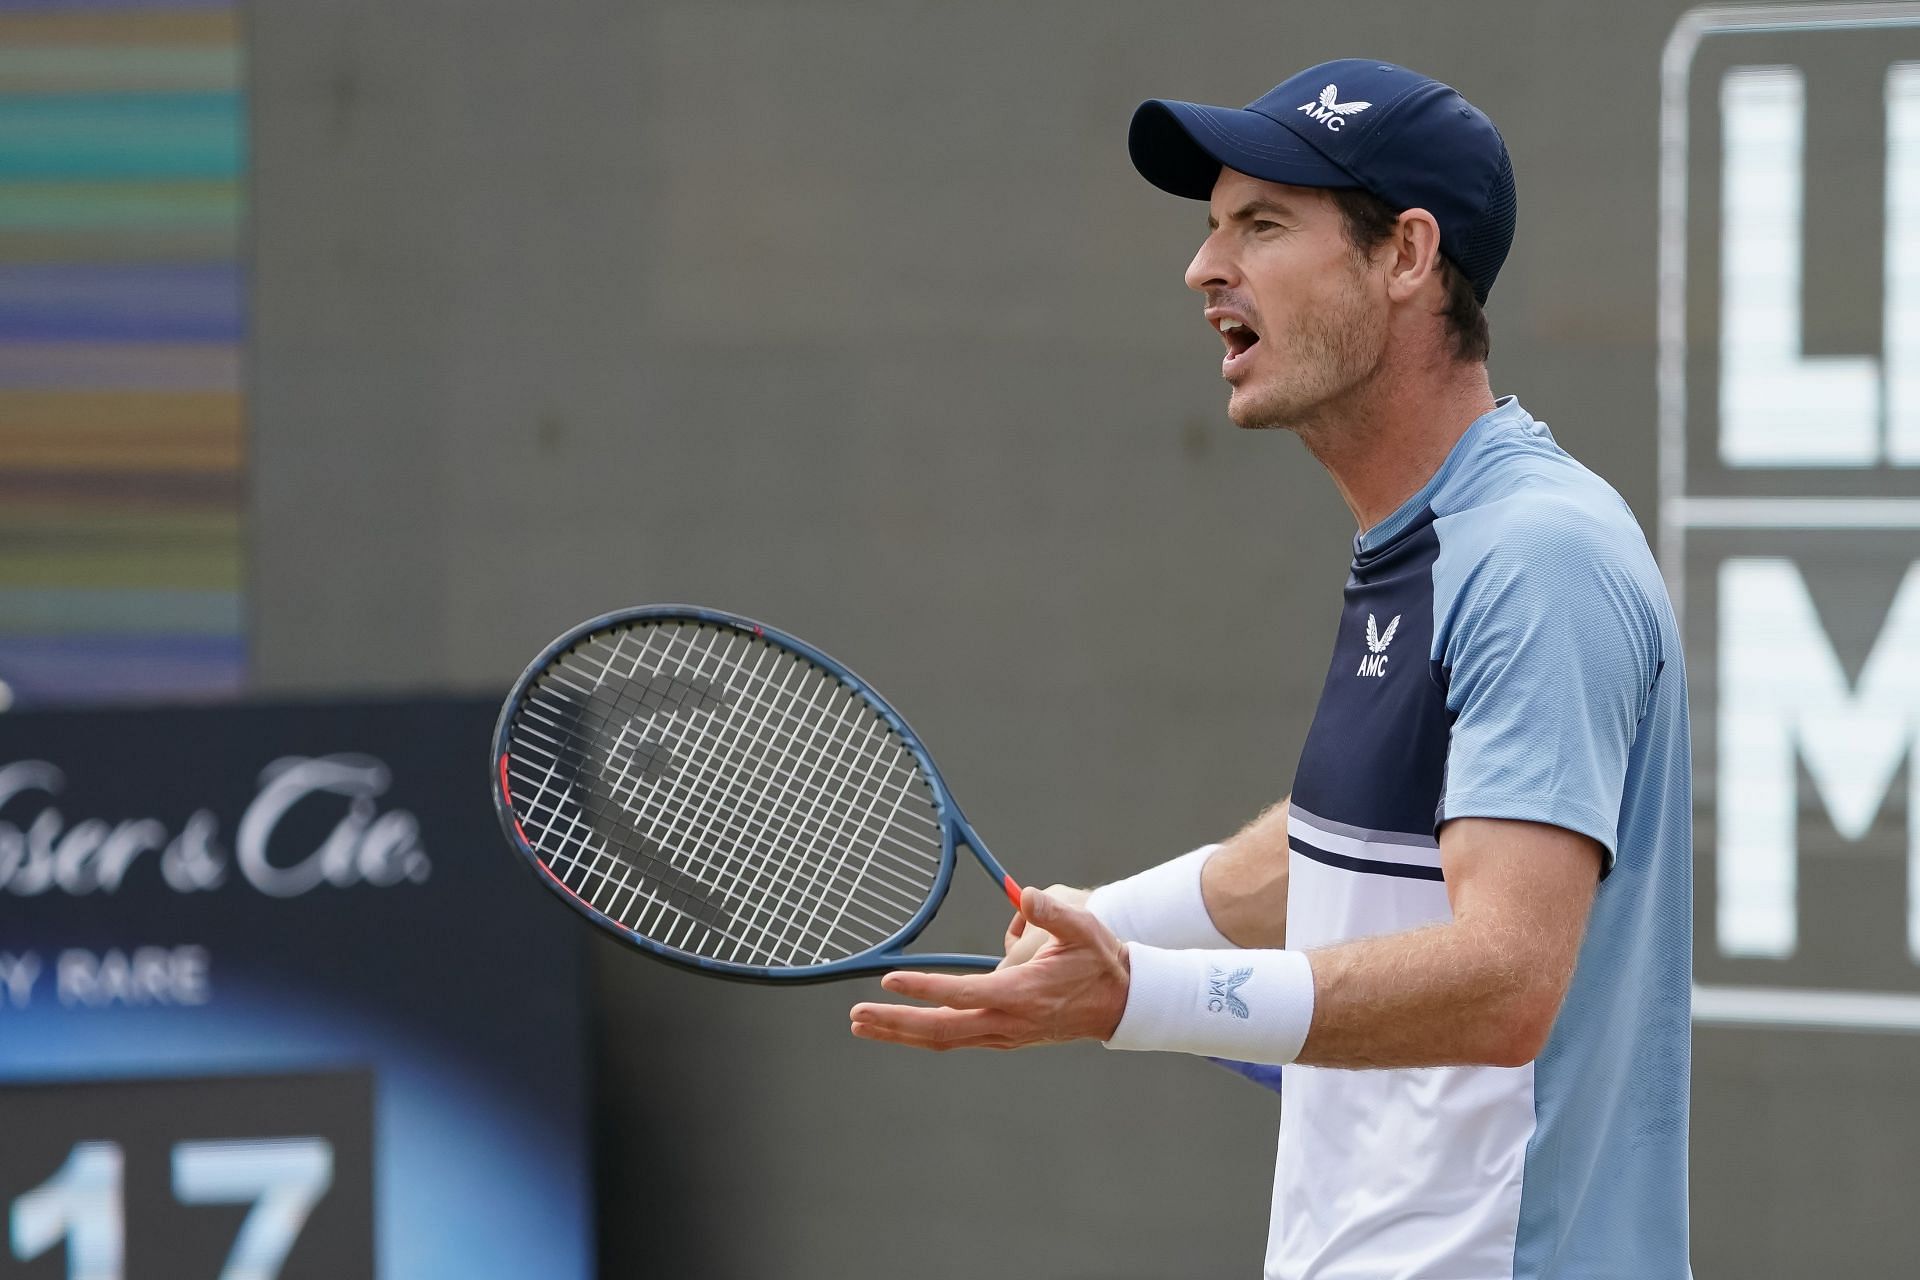 Andy Murray at the BOSS OPEN Stuttgart 2022 - Day 7